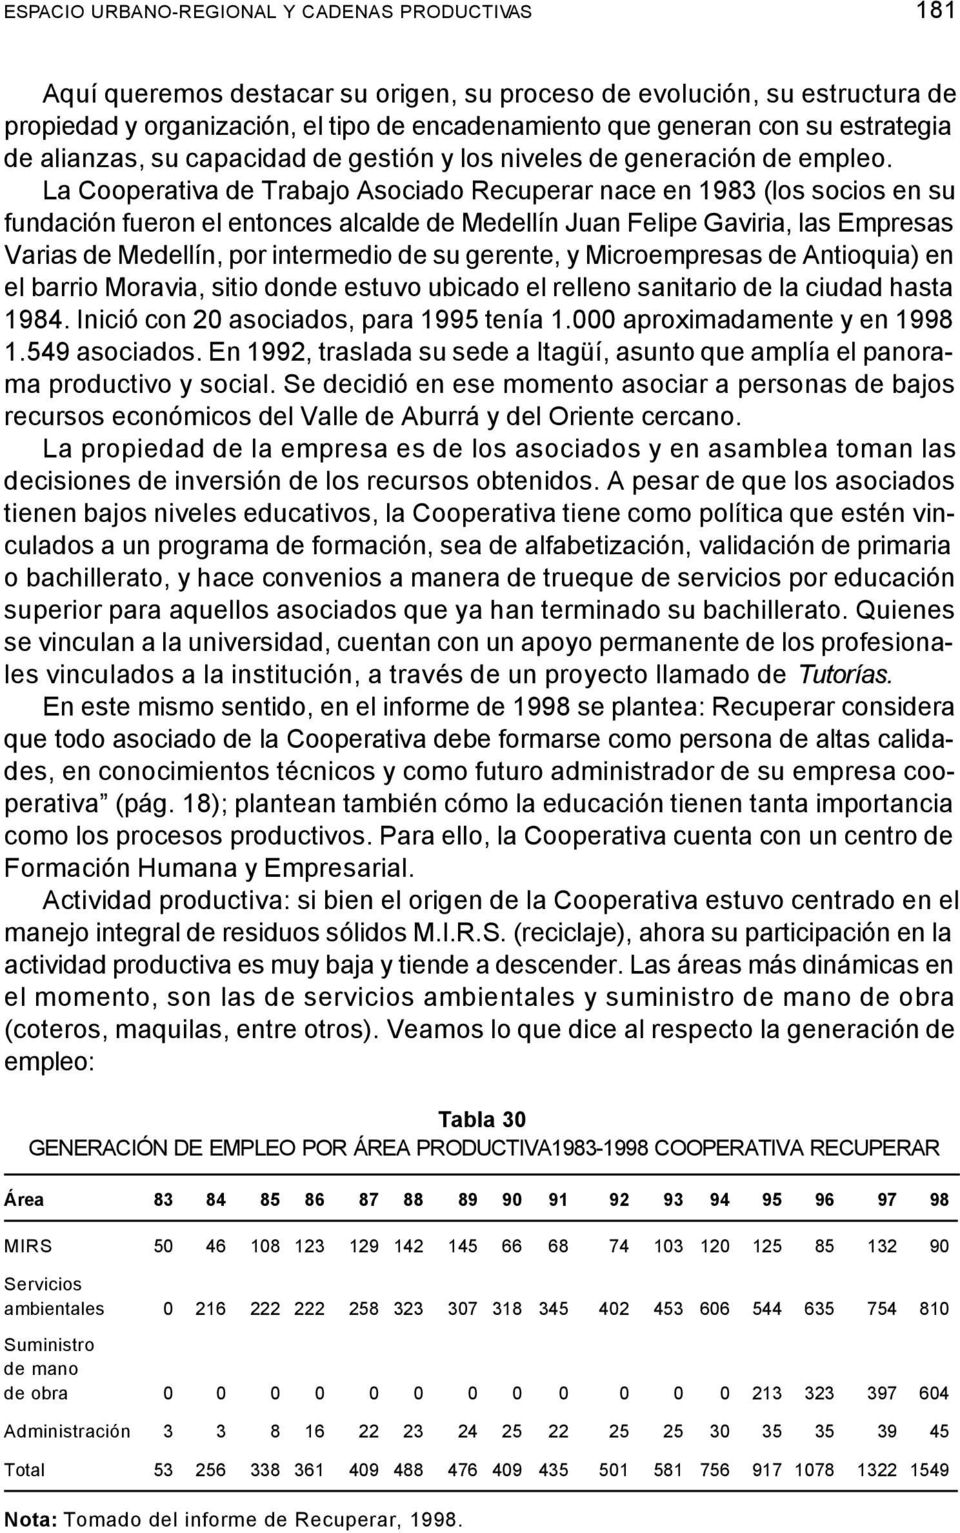 La Cooperativa de Trabajo Asociado Recuperar nace en 1983 (los socios en su fundación fueron el entonces alcalde de Medellín Juan Felipe Gaviria, las Empresas Varias de Medellín, por intermedio de su